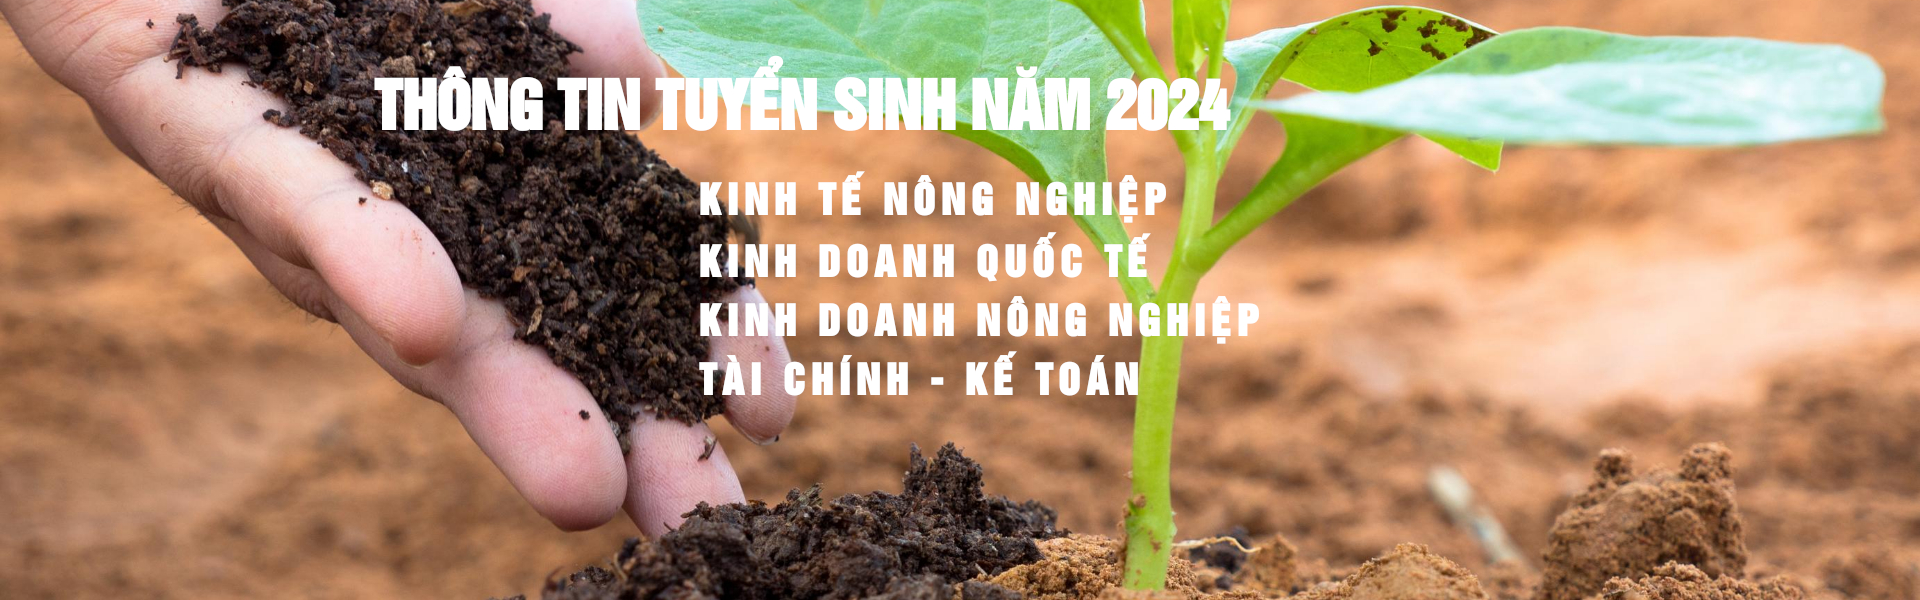 THÔNG BÁO TUYỂN SINH NĂM 2023